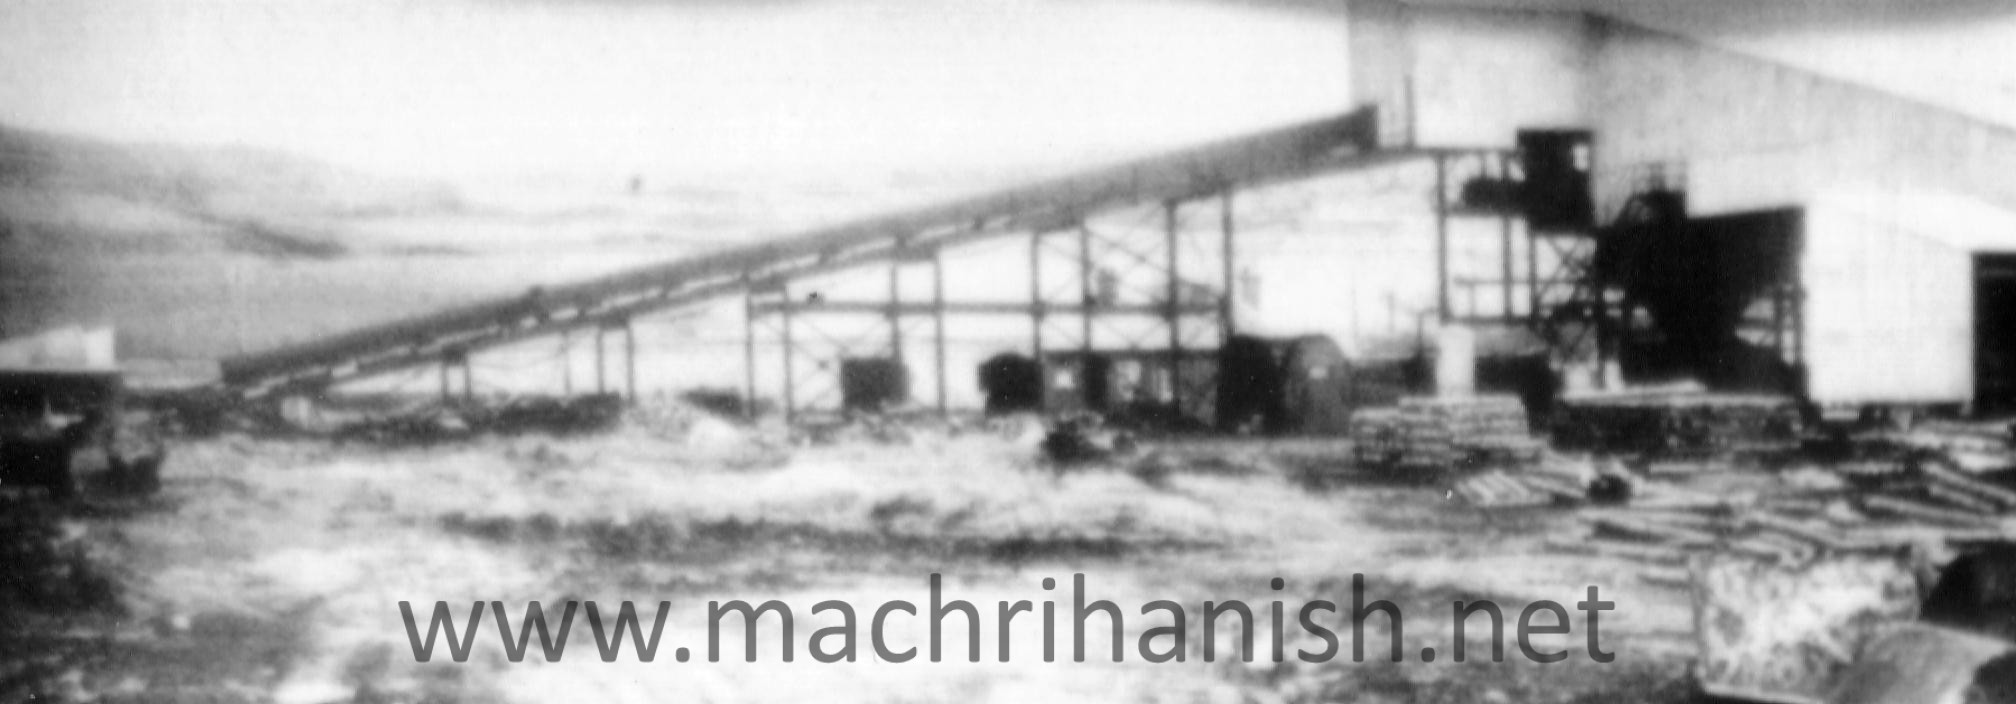 Machrihanish Colliery